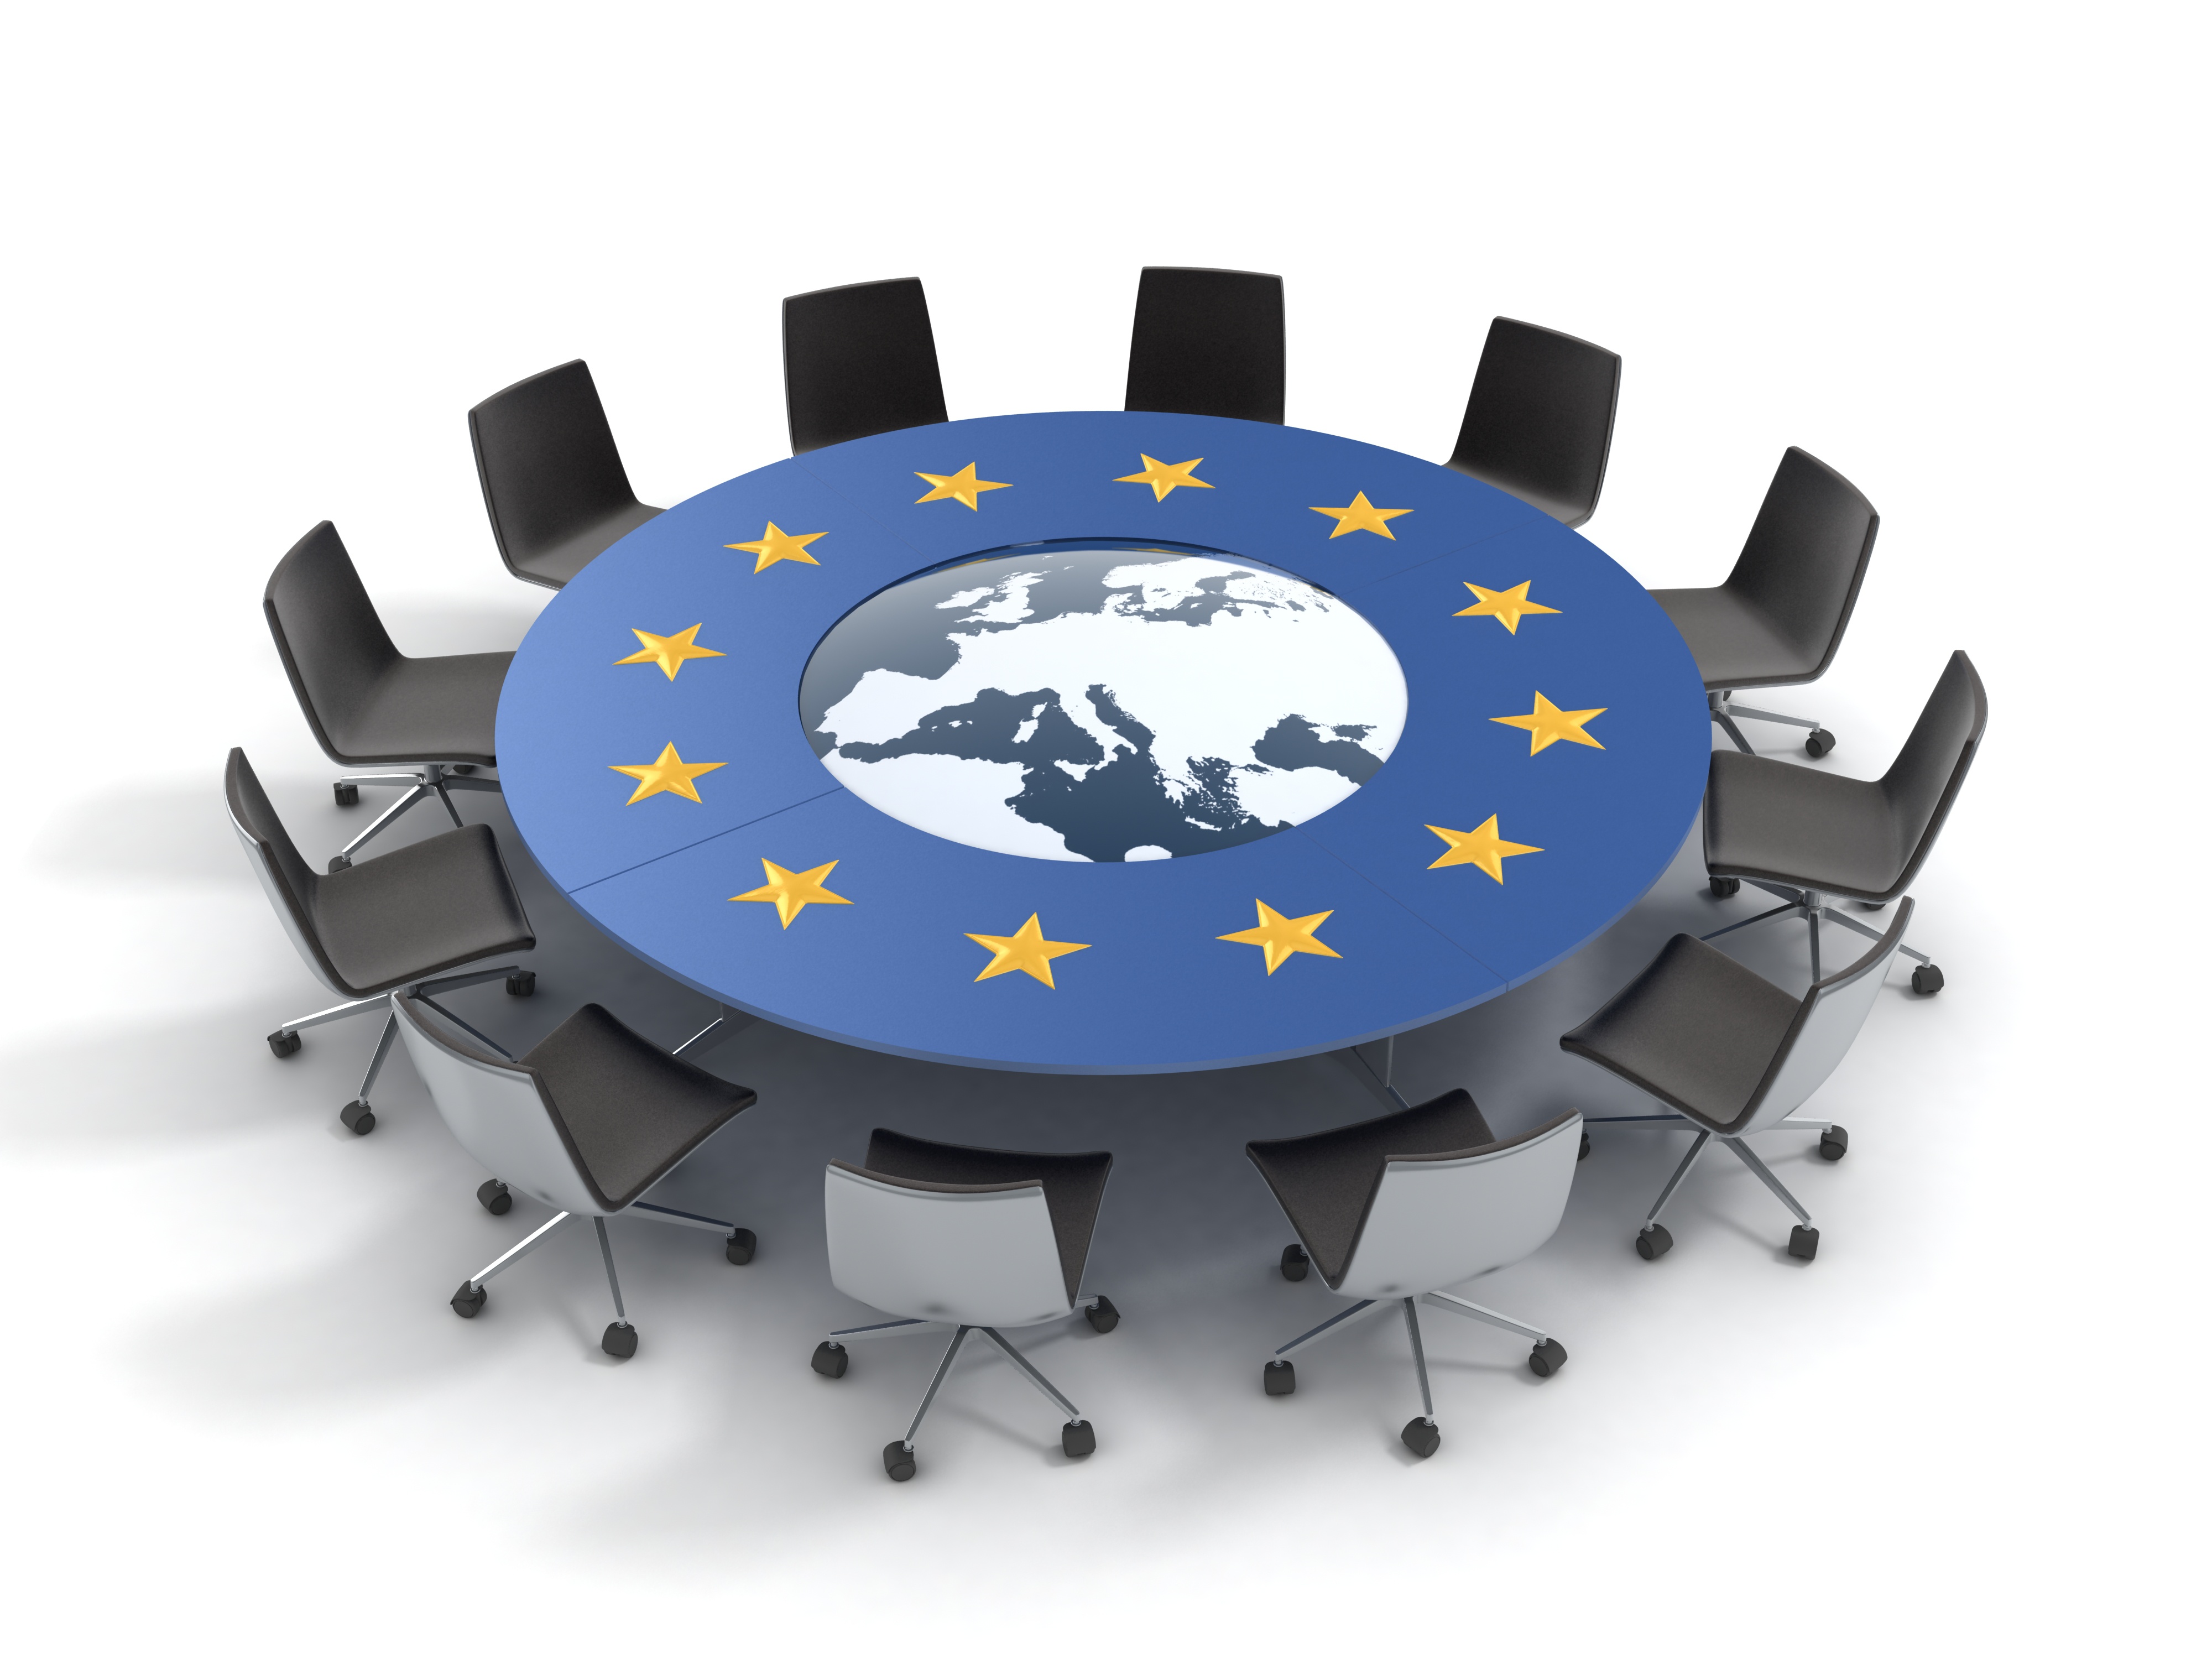 Ein großer Runder Tisch um den 12 Stühle stehen. Auf dem Tisch ist die Weltkugel mit Fokus auf Europa abgebildet und darum 12 Sterne.